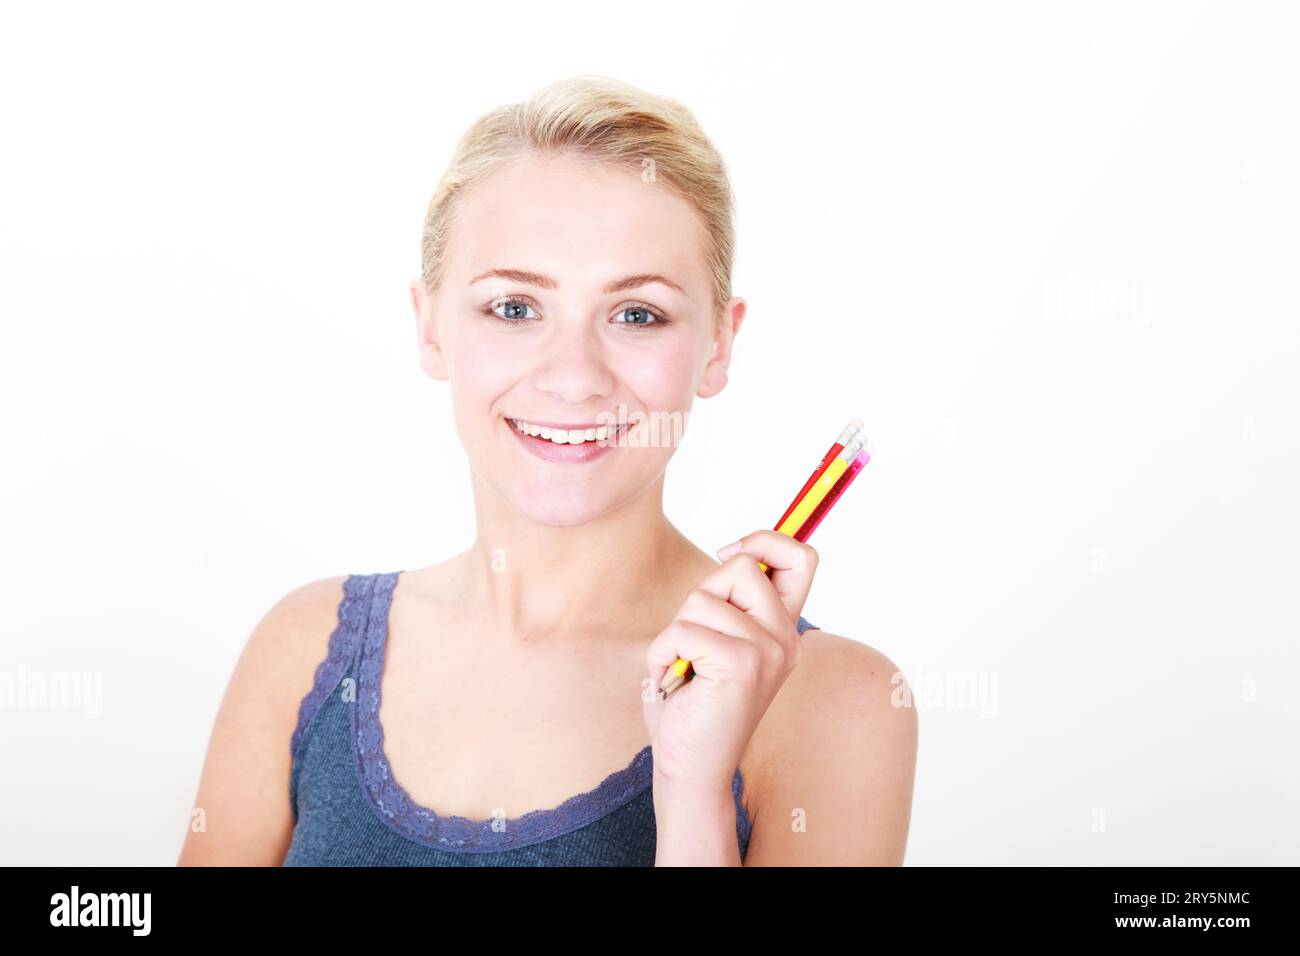 Kopf-Schulter-Porträt eines jungen blonden Models auf weißem Hintergrund mit bunten Bleistiften Stockfoto